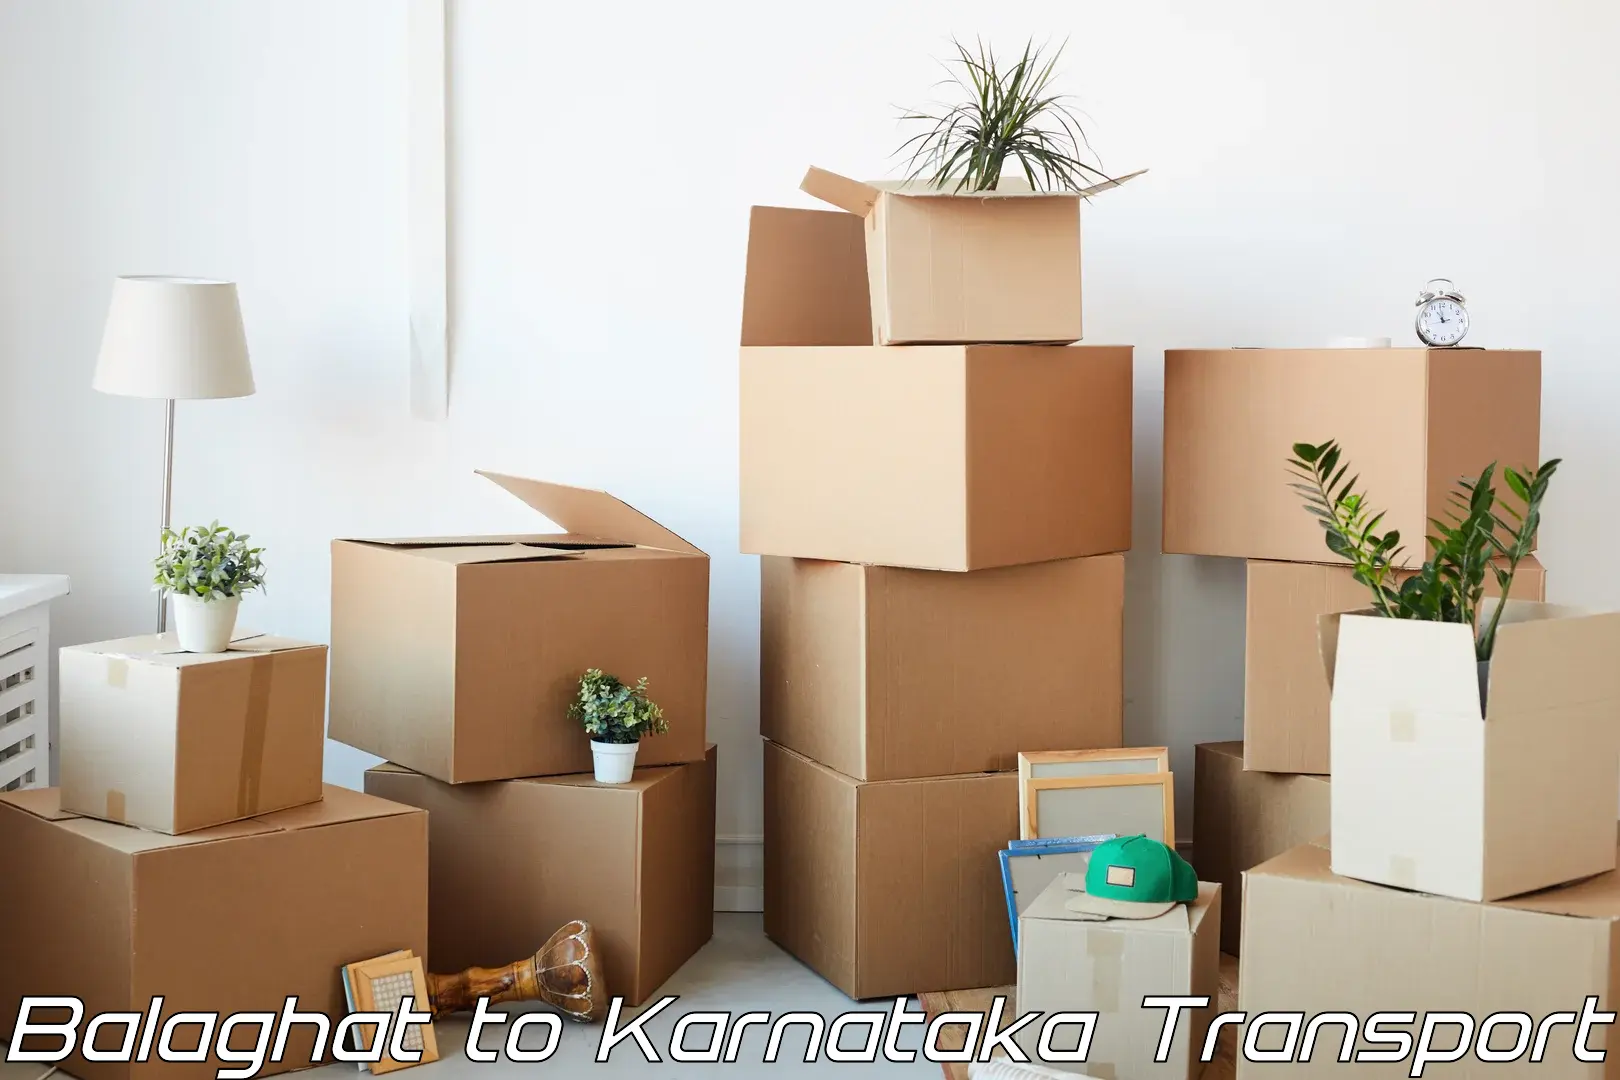 Luggage transport services Balaghat to Karnataka